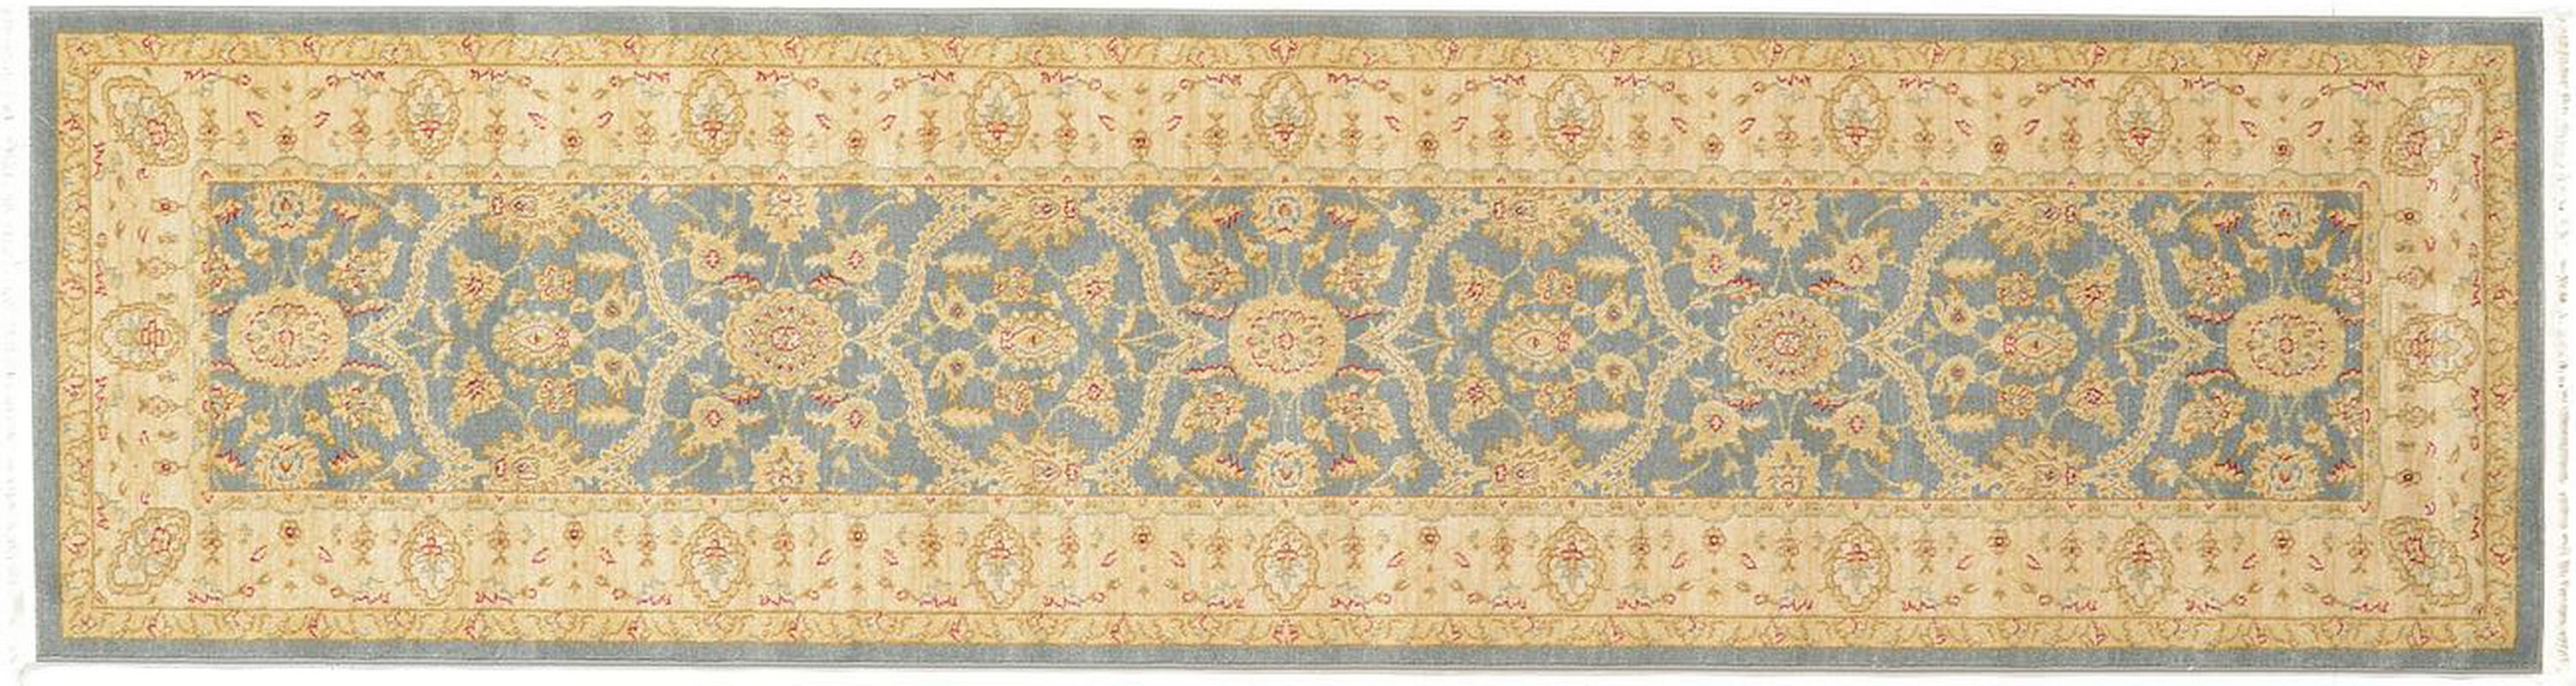 古典经典地毯ID9687